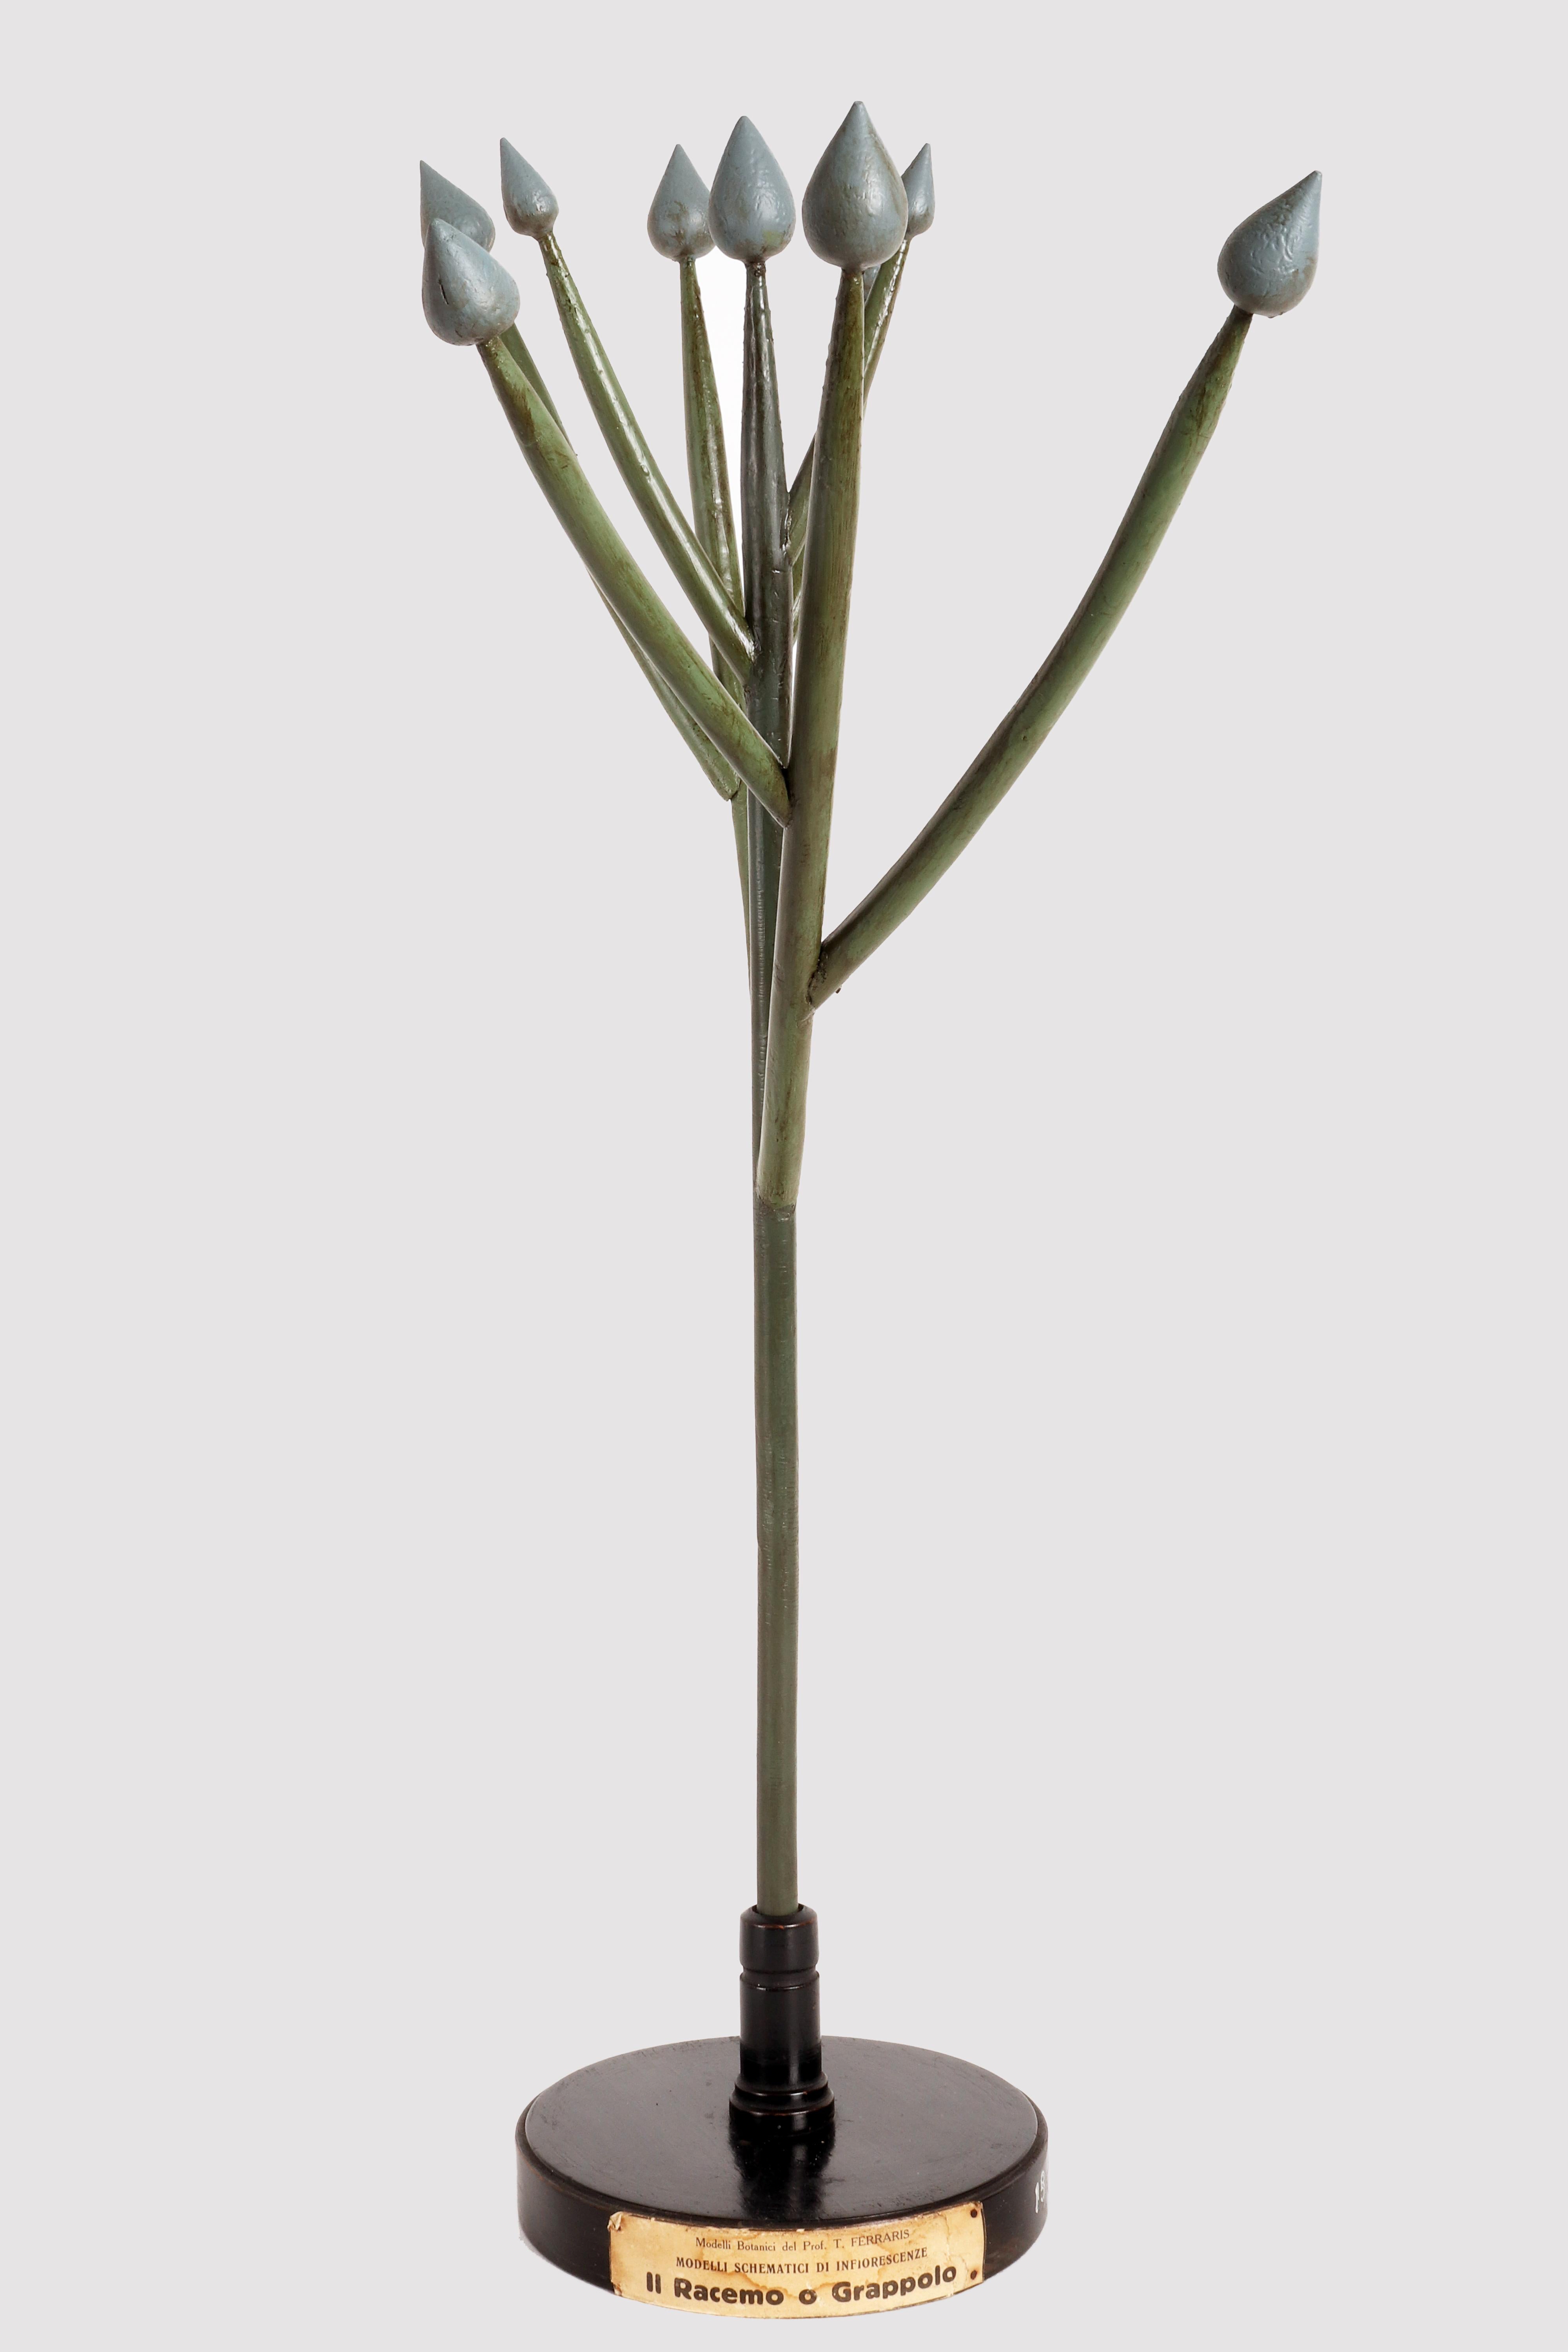 Rare modèle botanique schématique du Prof. T. Ferrari, à usage didactique, d'un type de spécimen d'inflorescence, le Raceme ou grappe, réalisé avec des gemmes colorées en plâtre peintes à la main, des branches en bois et des éléments en papier mâché